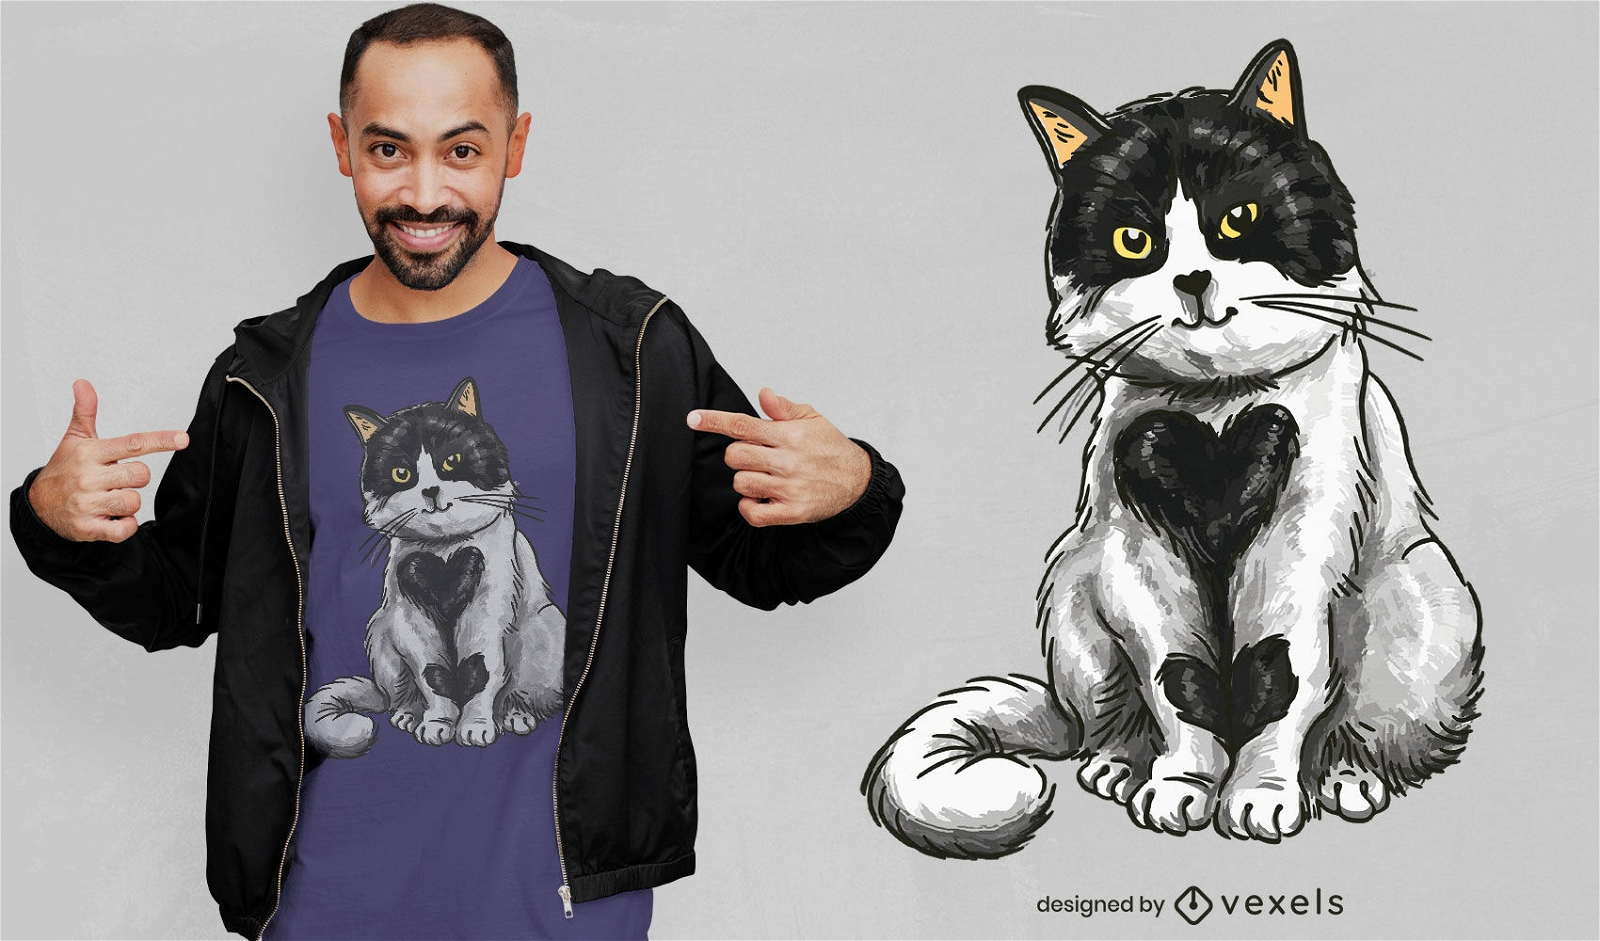 Lovely heart cat t-shirt design